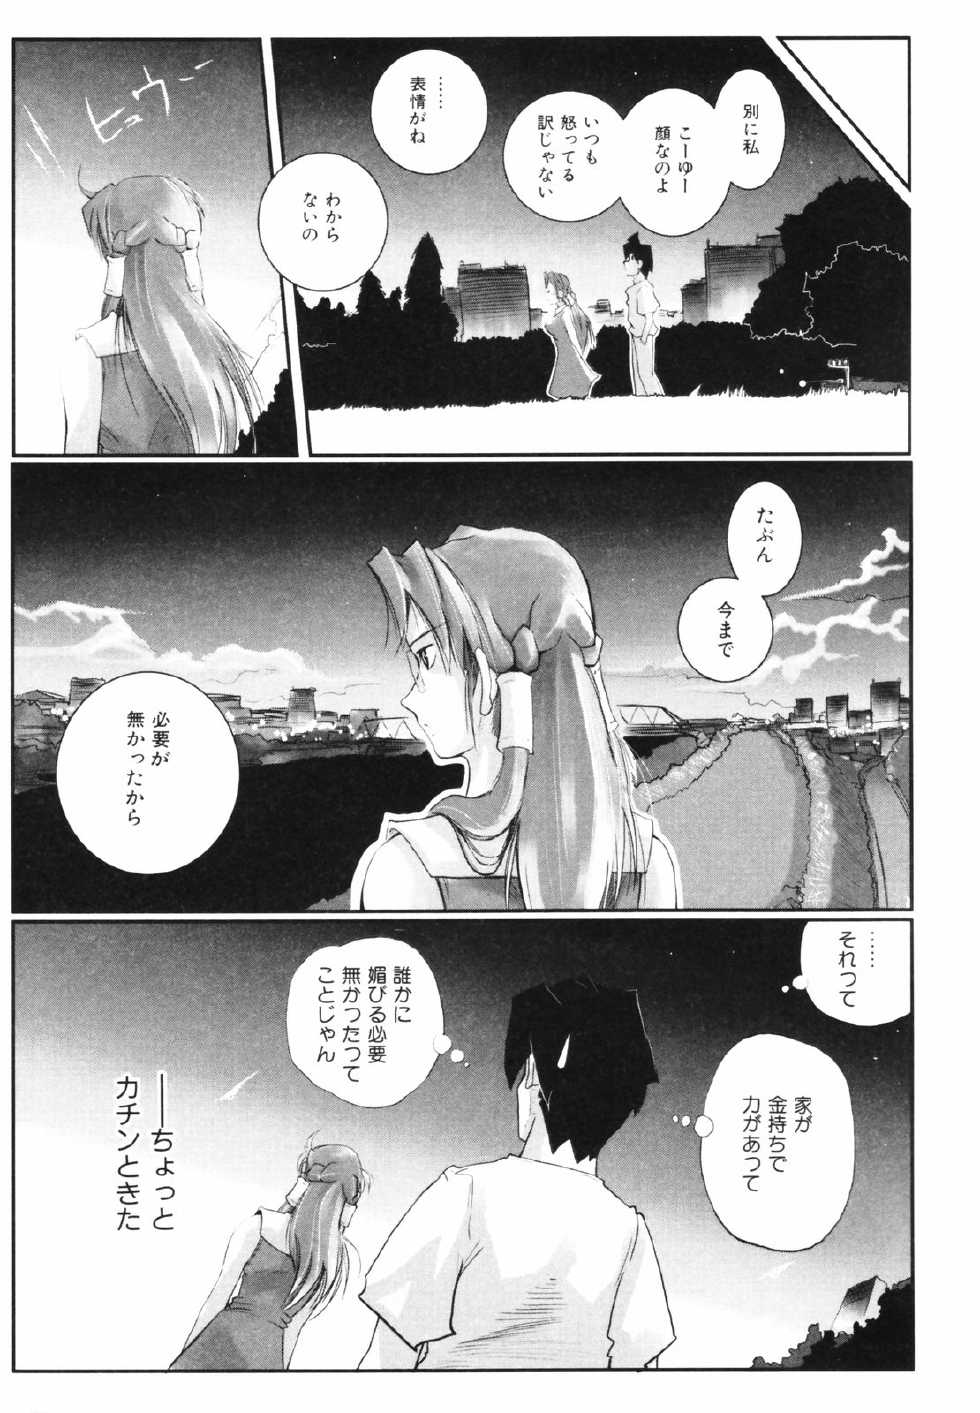 [Kirie Masanobu] Leviathan - Page 37